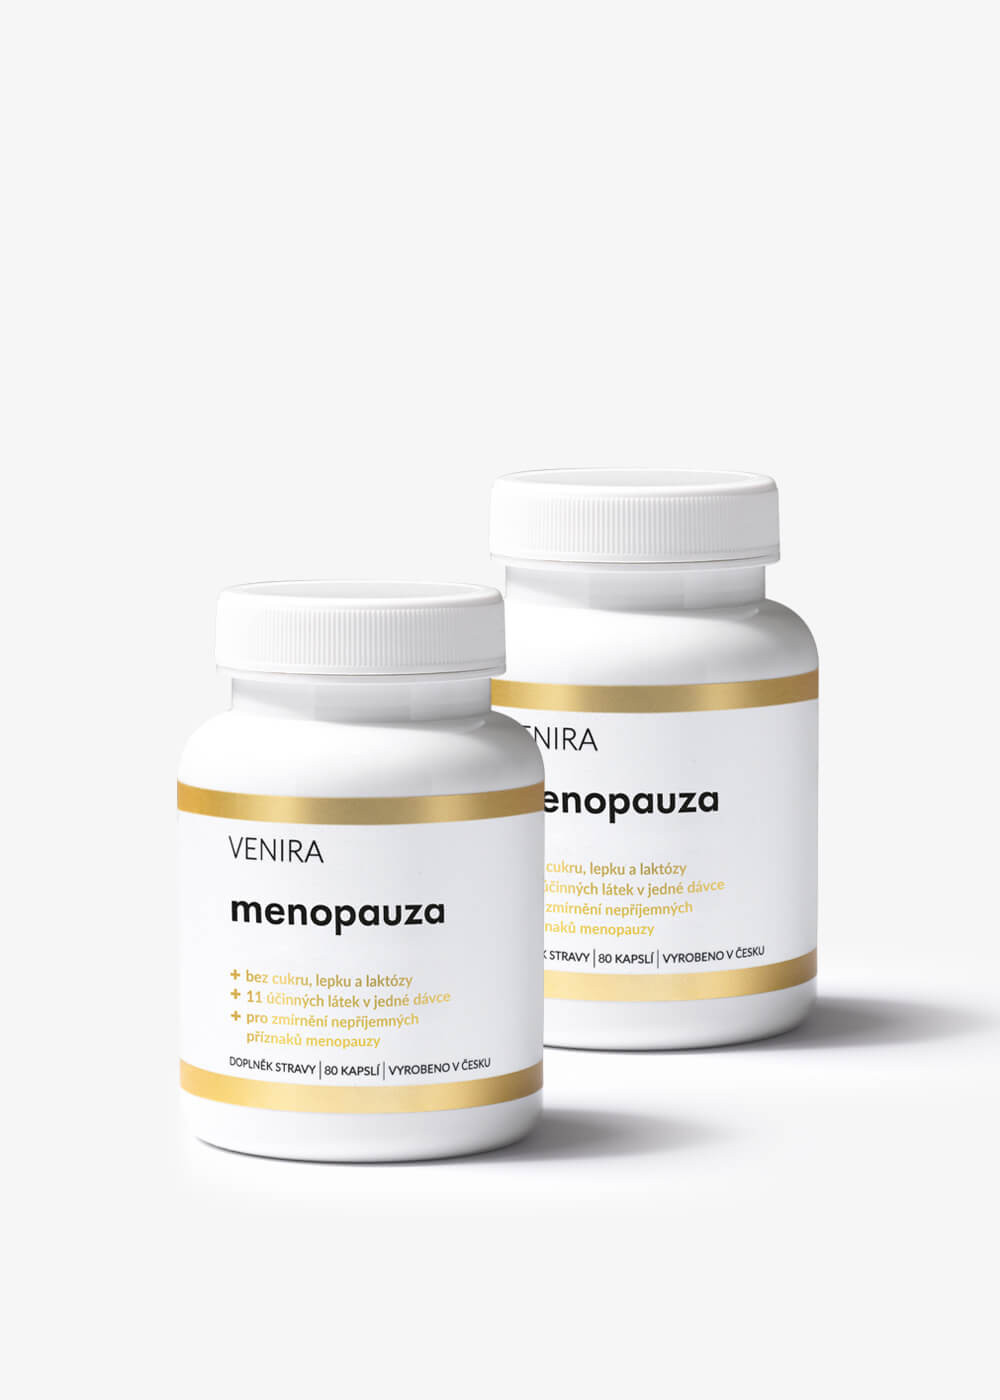 VENIRA menopauza, 2 balení za zvýhodněnou cenu, 160 kapslí